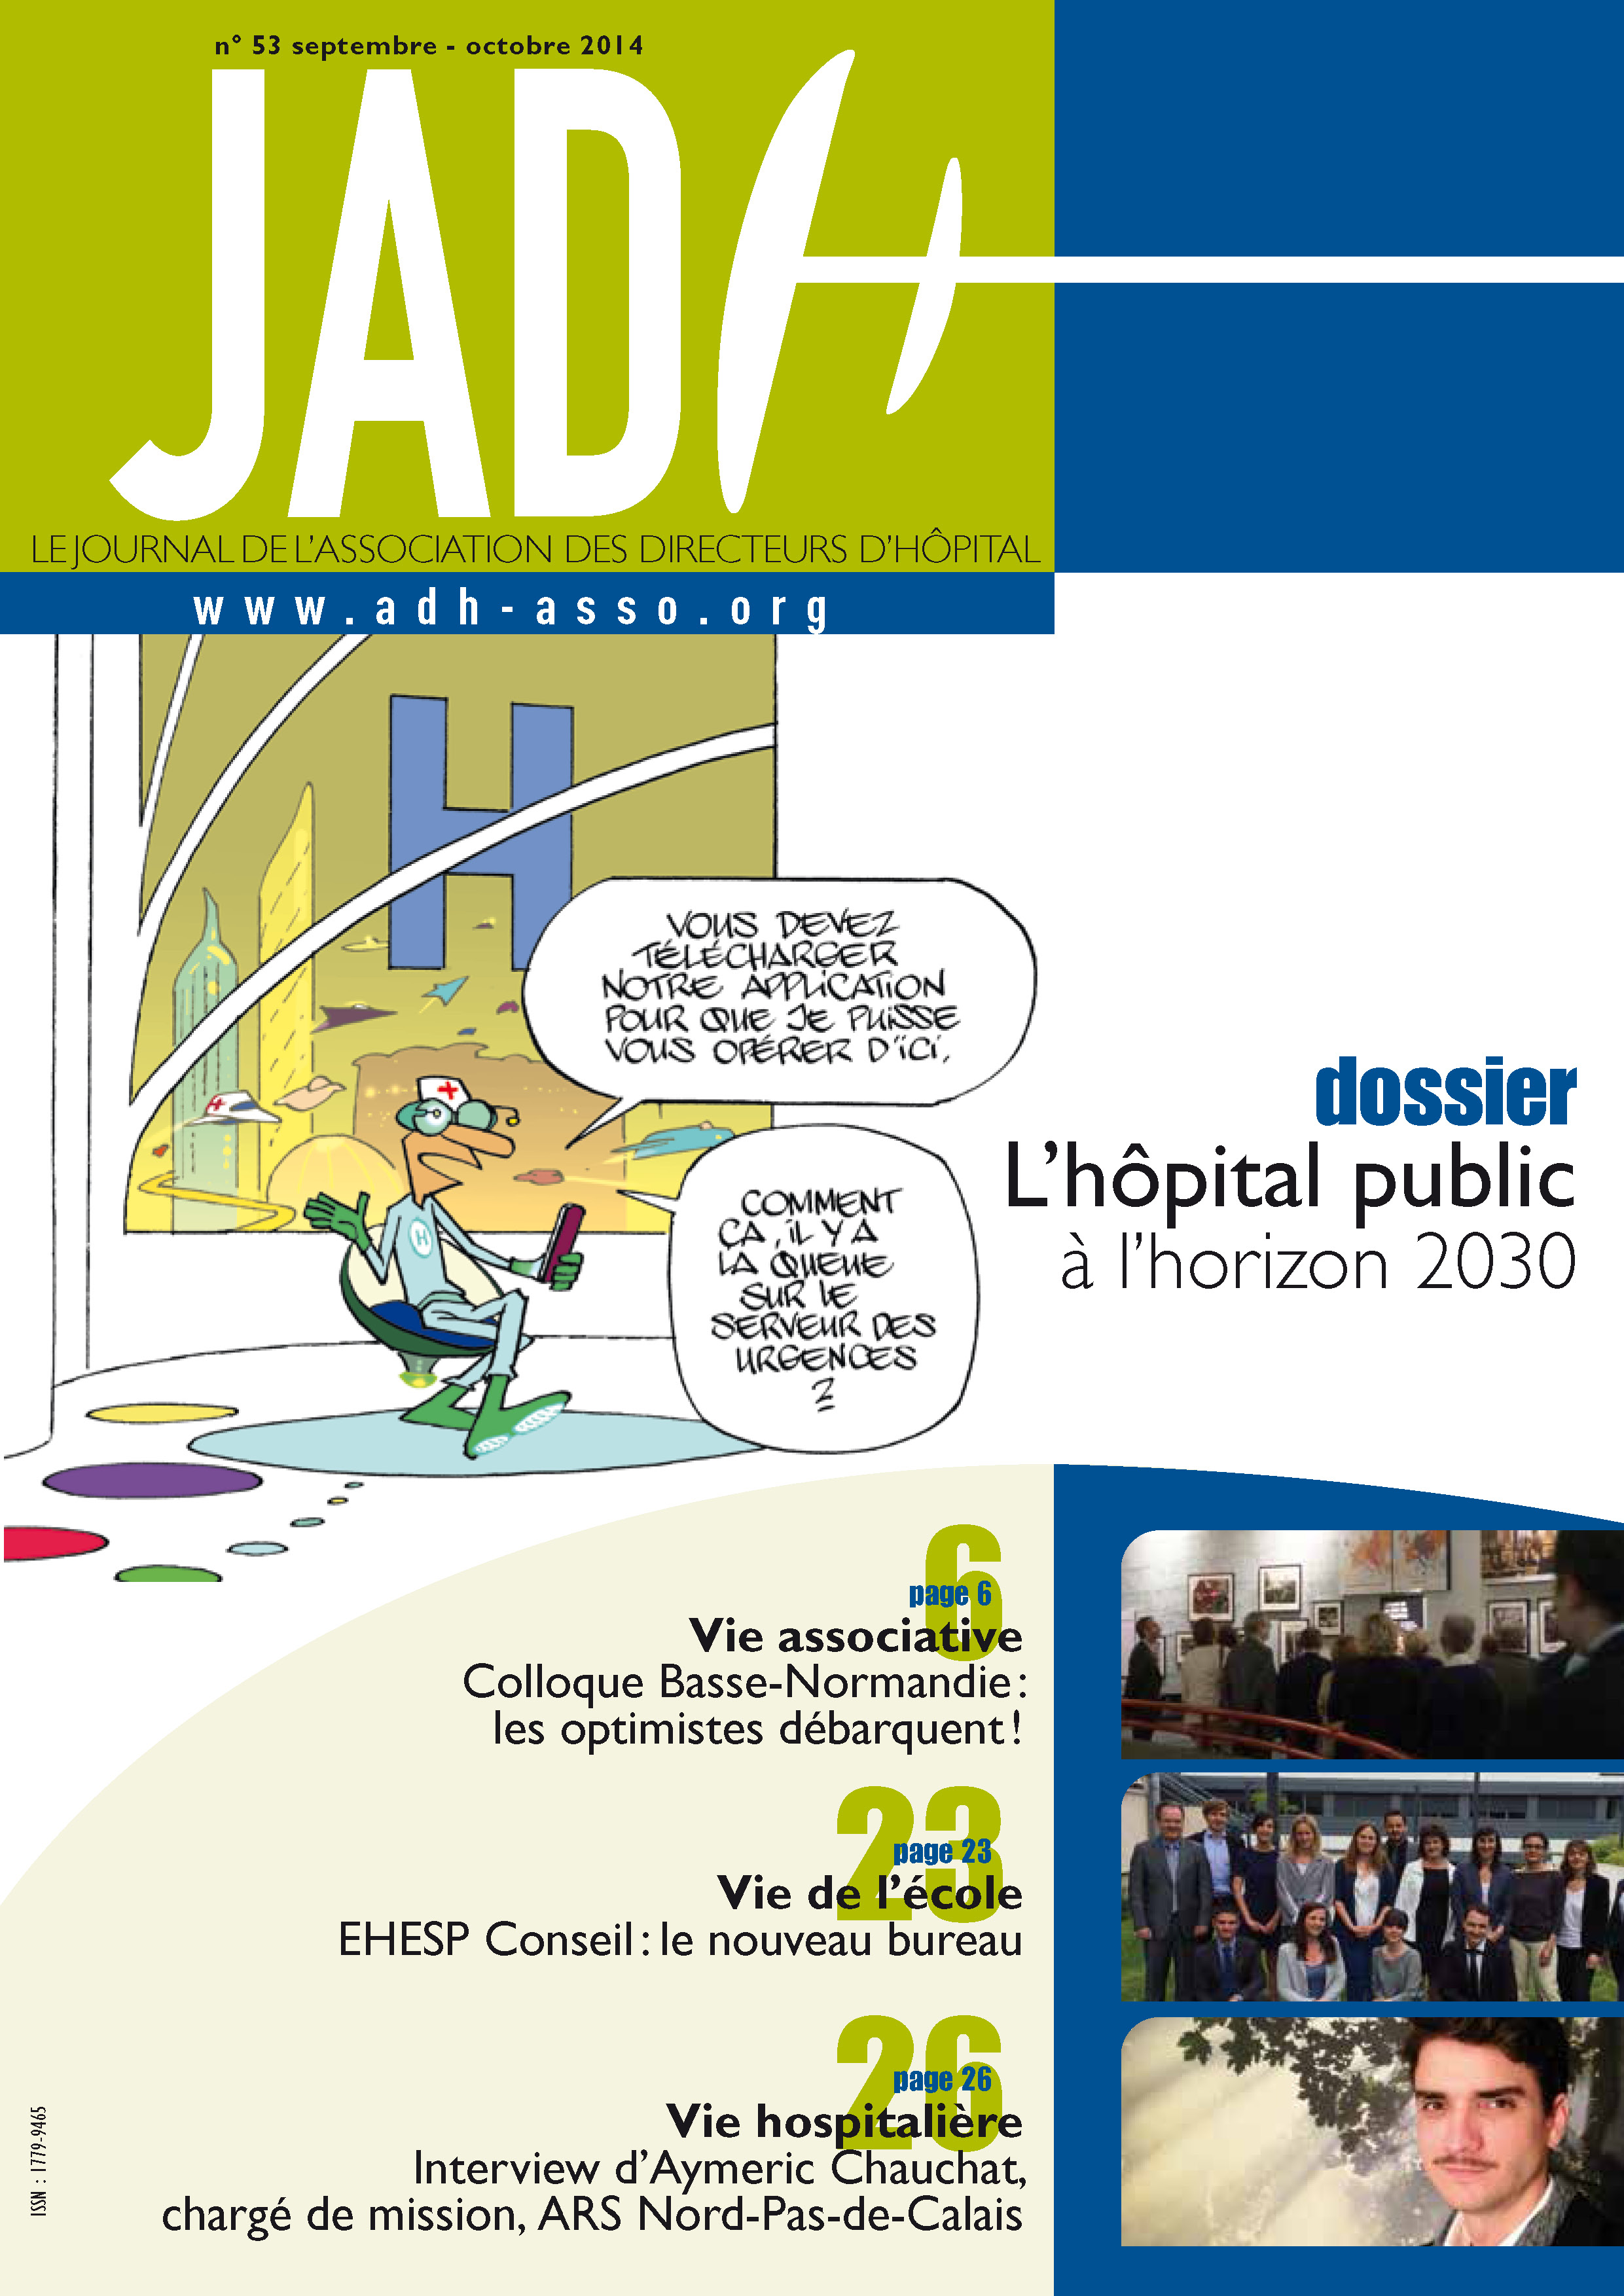 JADH 53 – septembre/octobre 2014